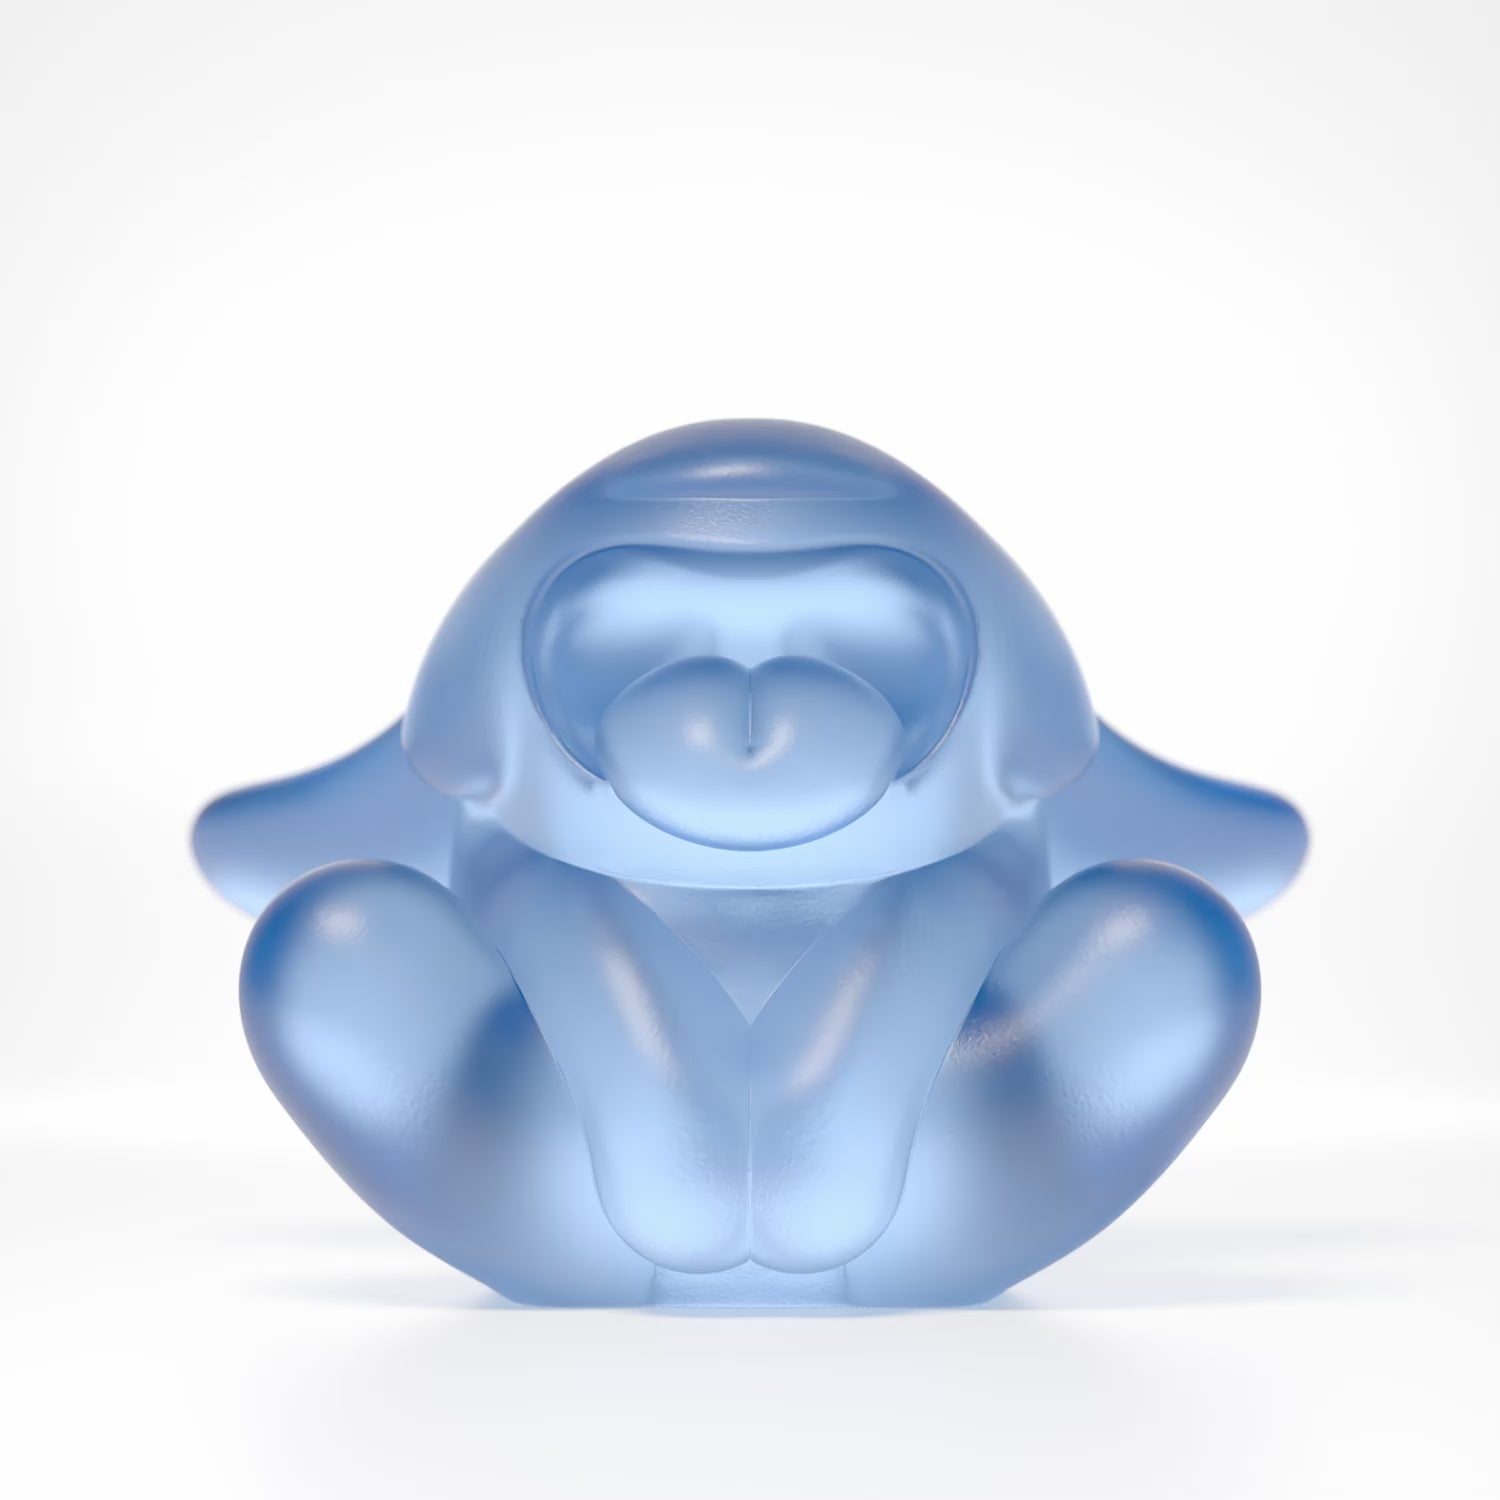 360 degree rotation of Bunnie roar blue Crystal by Ferdi B Dick